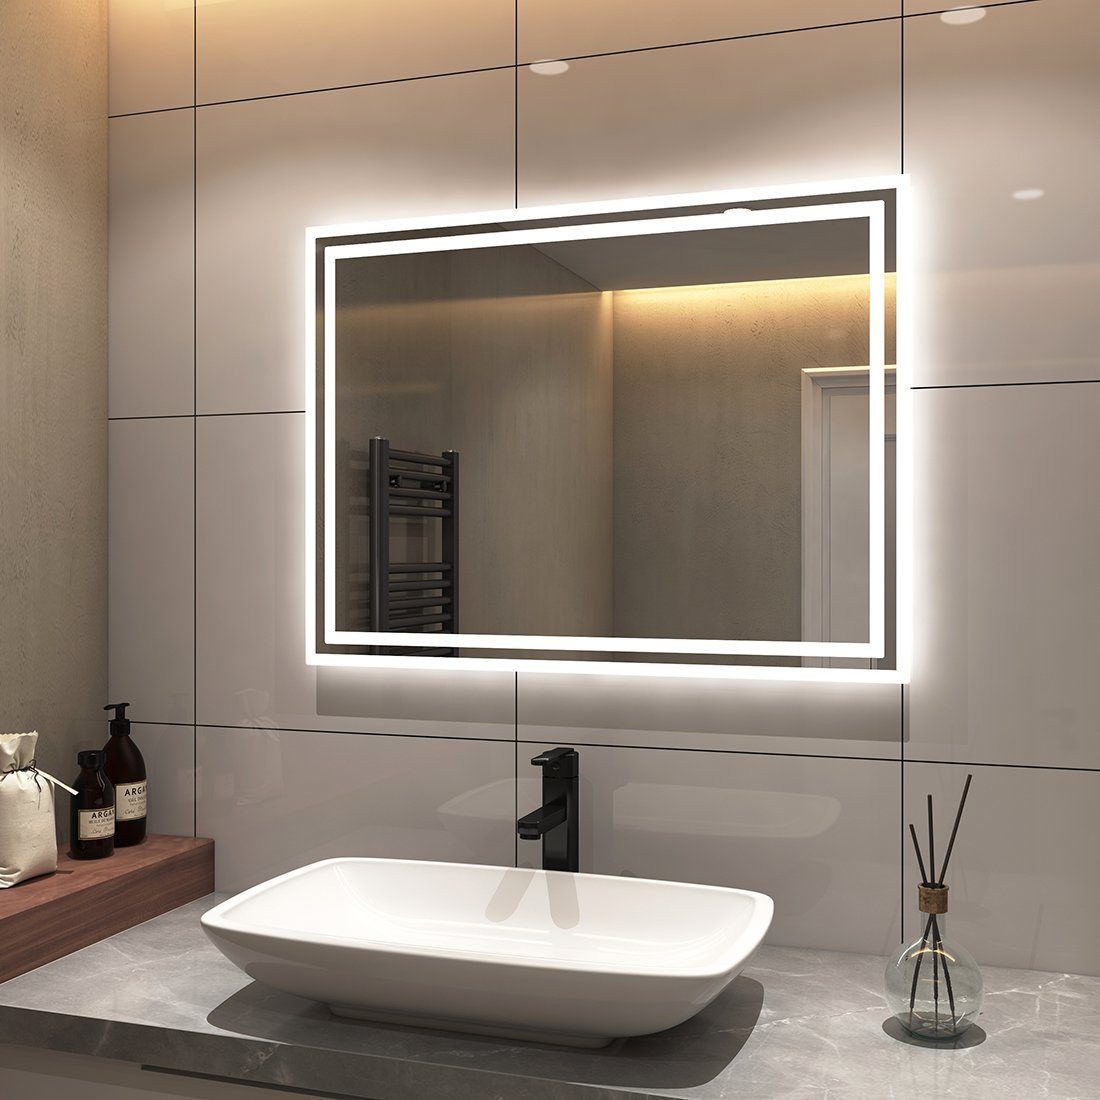 S'AFIELINA Badspiegel Badspiegel mit Beleuchtung, LED Badspiegel mit Druckknopfschalter, Beschlagfrei,2 Lichtfarben,Energiesparend, Wandmontage, IP44